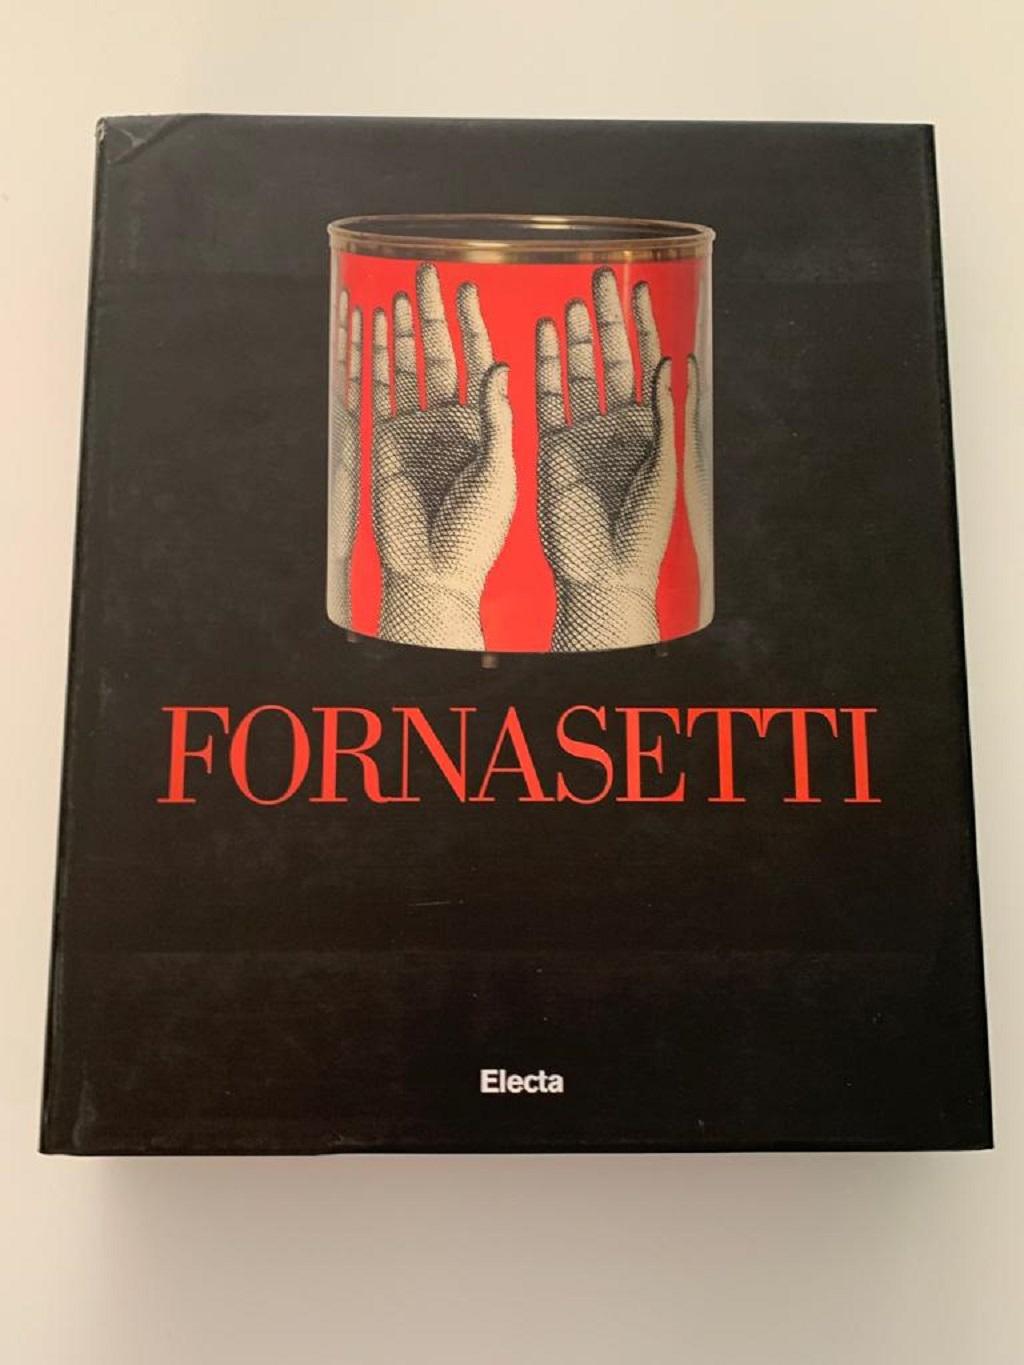 Piero Fornasetti war ein genialer und produktiver Schöpfer: Sein künstlerisches Schaffen, seine Dekoration, seine Inneneinrichtung und sein Design werden endlich in einem vollständigen Band gesammelt und dokumentiert.
Hardcover mit Kartoneinband, in